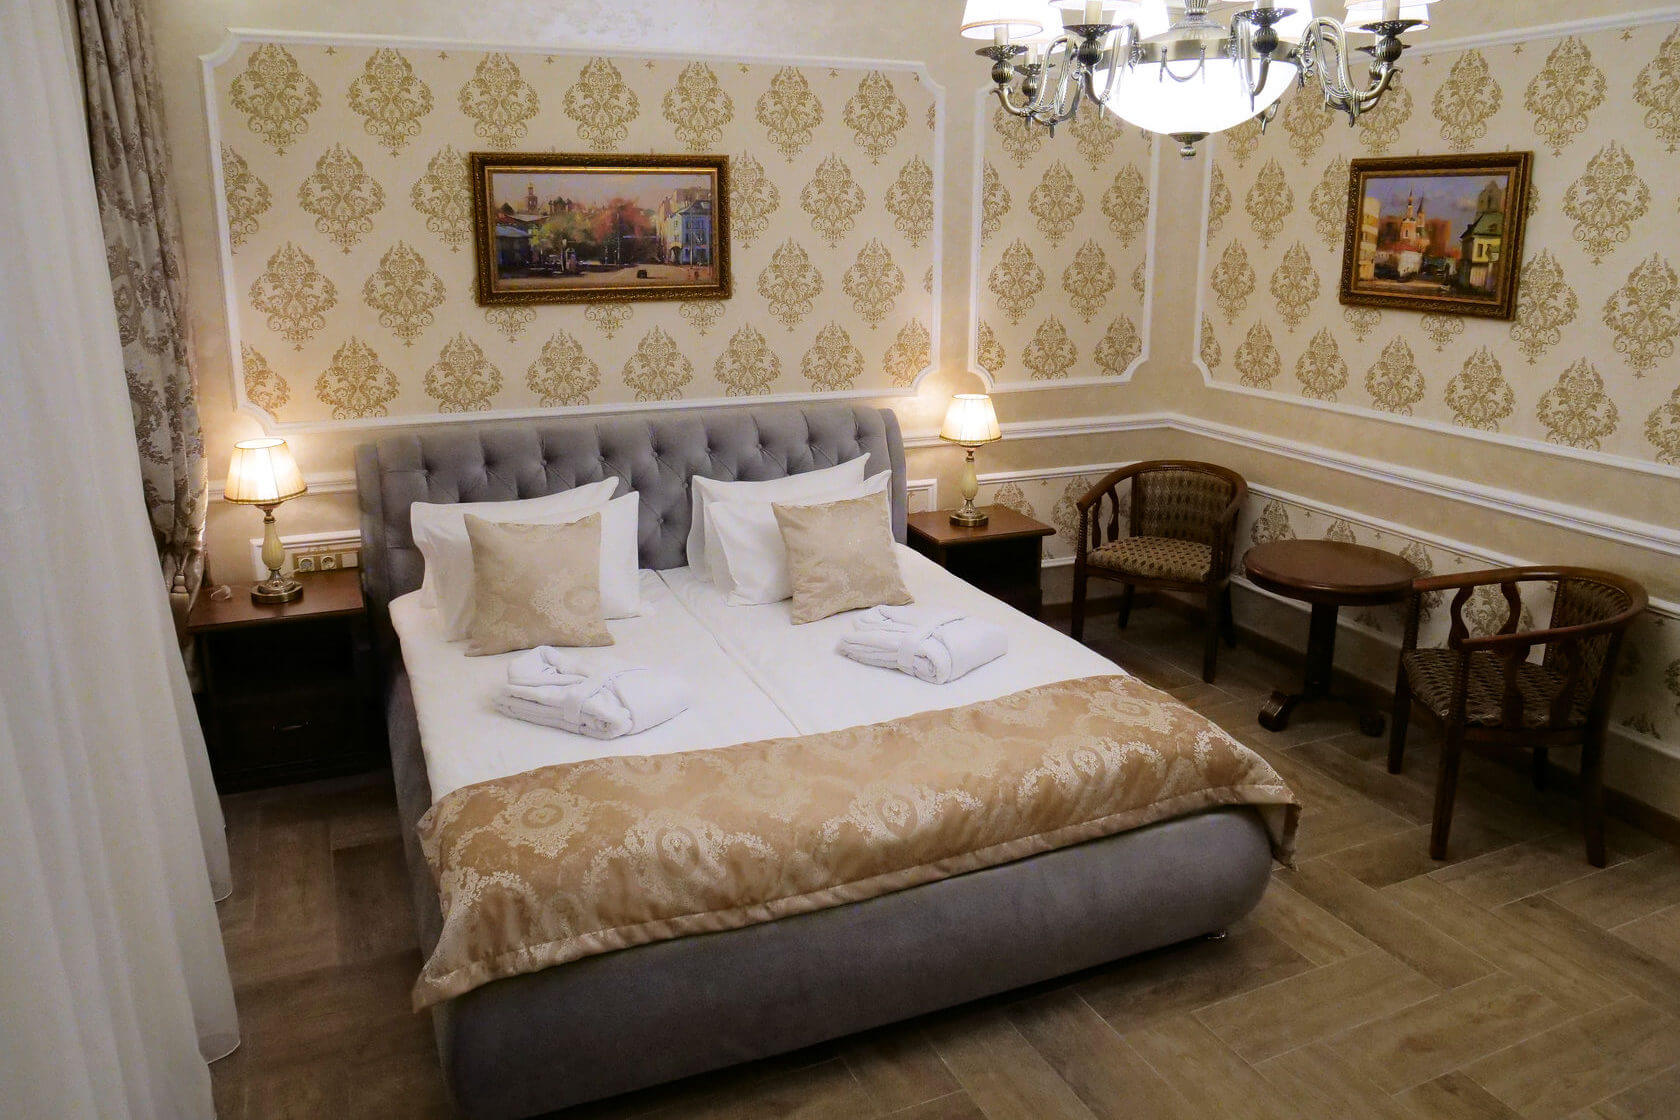 Пример спального места - классическая гостиничная комплектация.